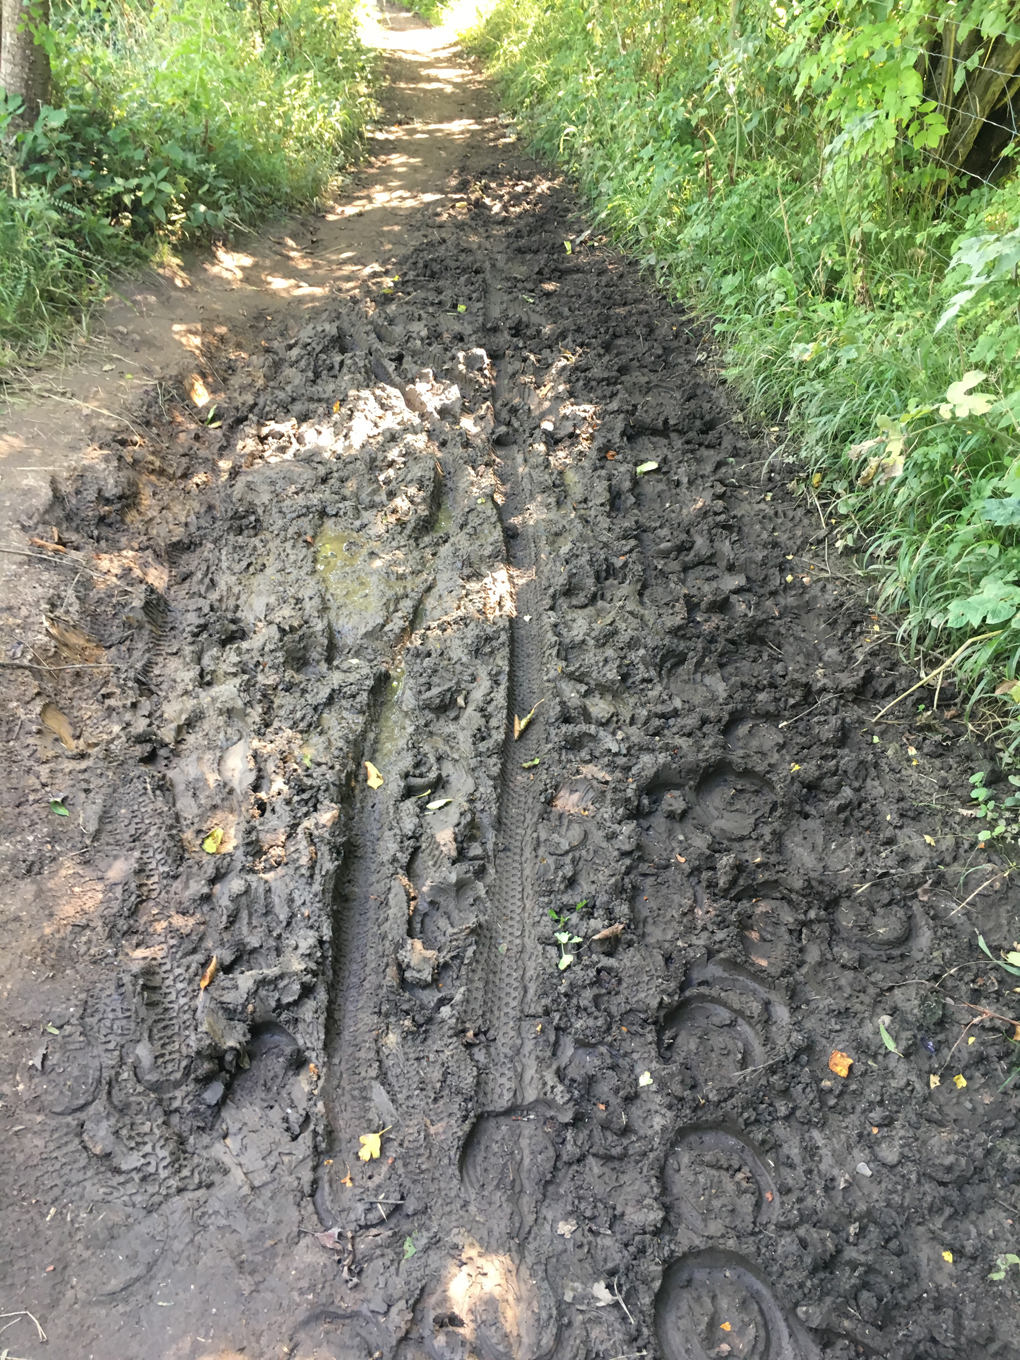 muddy path through a wood